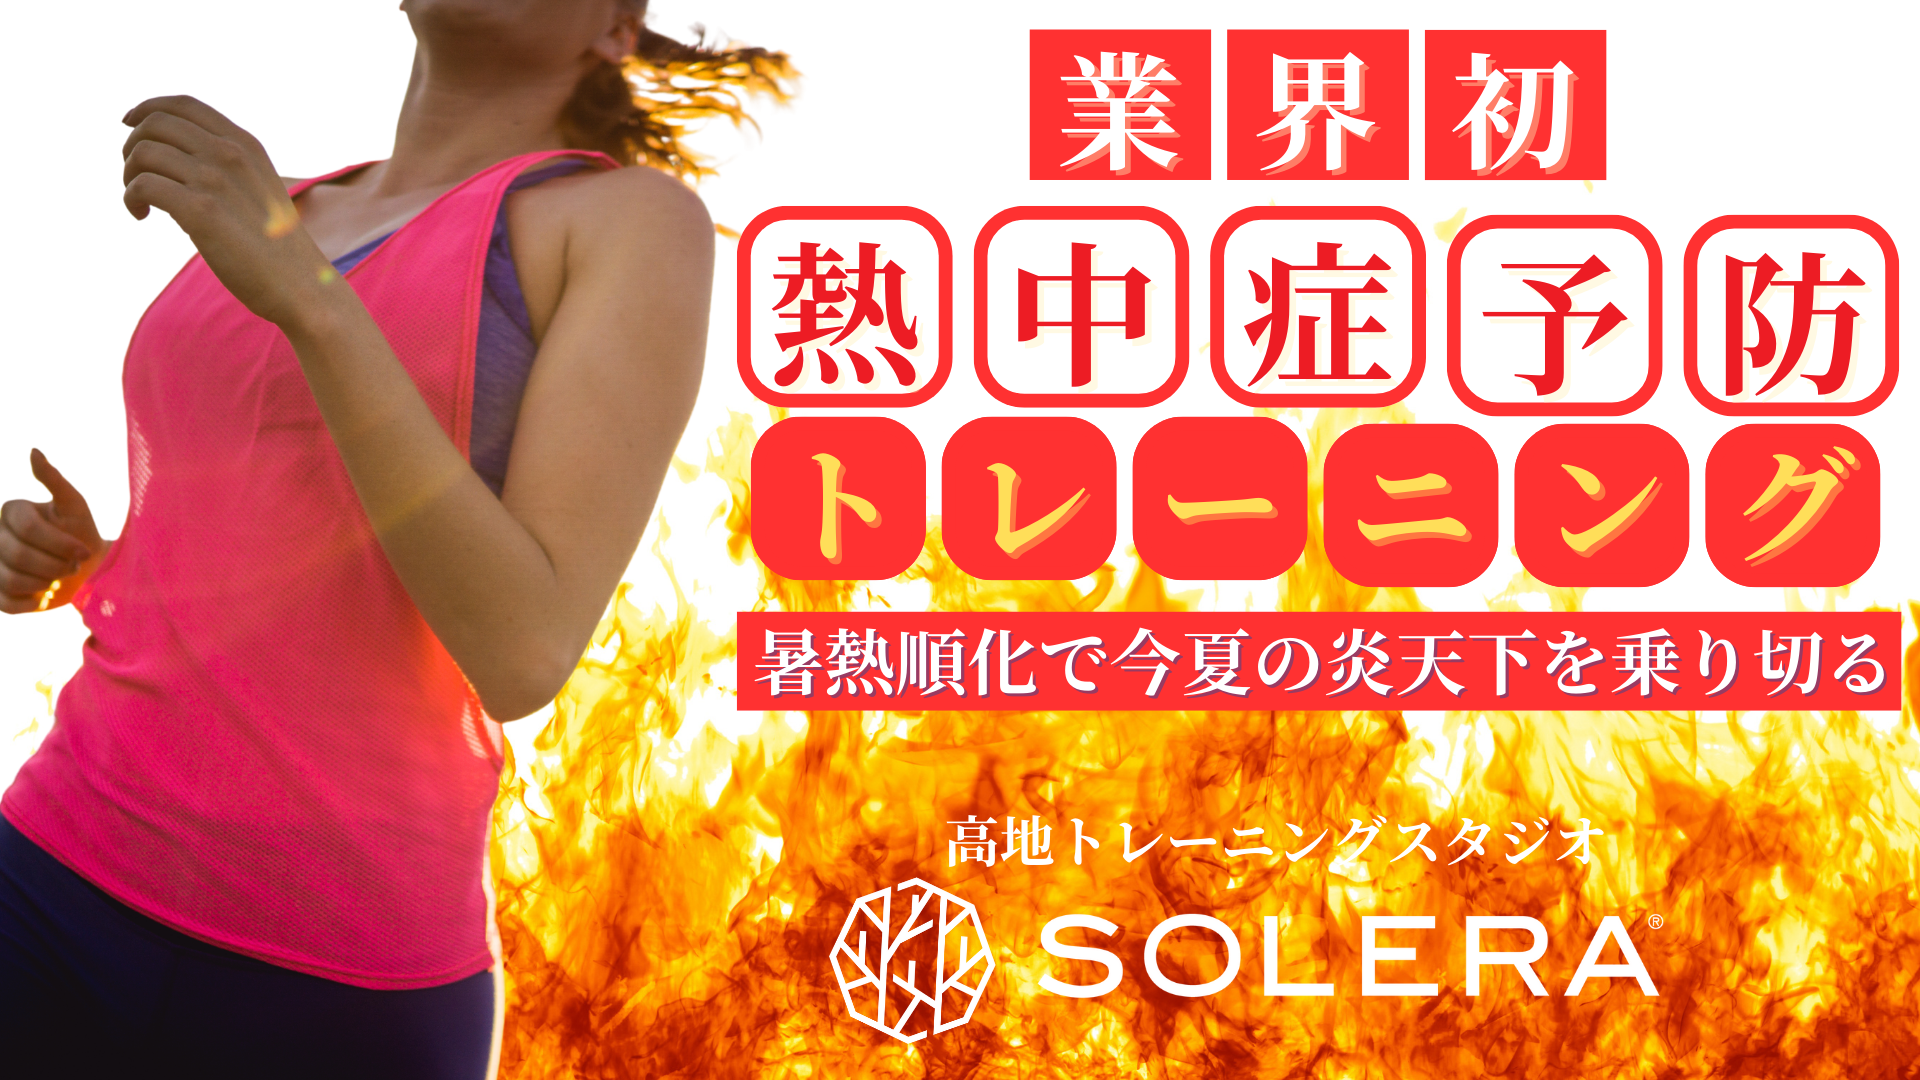 高地トレーニングスタジオSOLERA 京都四条烏丸店で
熱中症対策の「暑熱順化」に特化した特別プログラムを開催